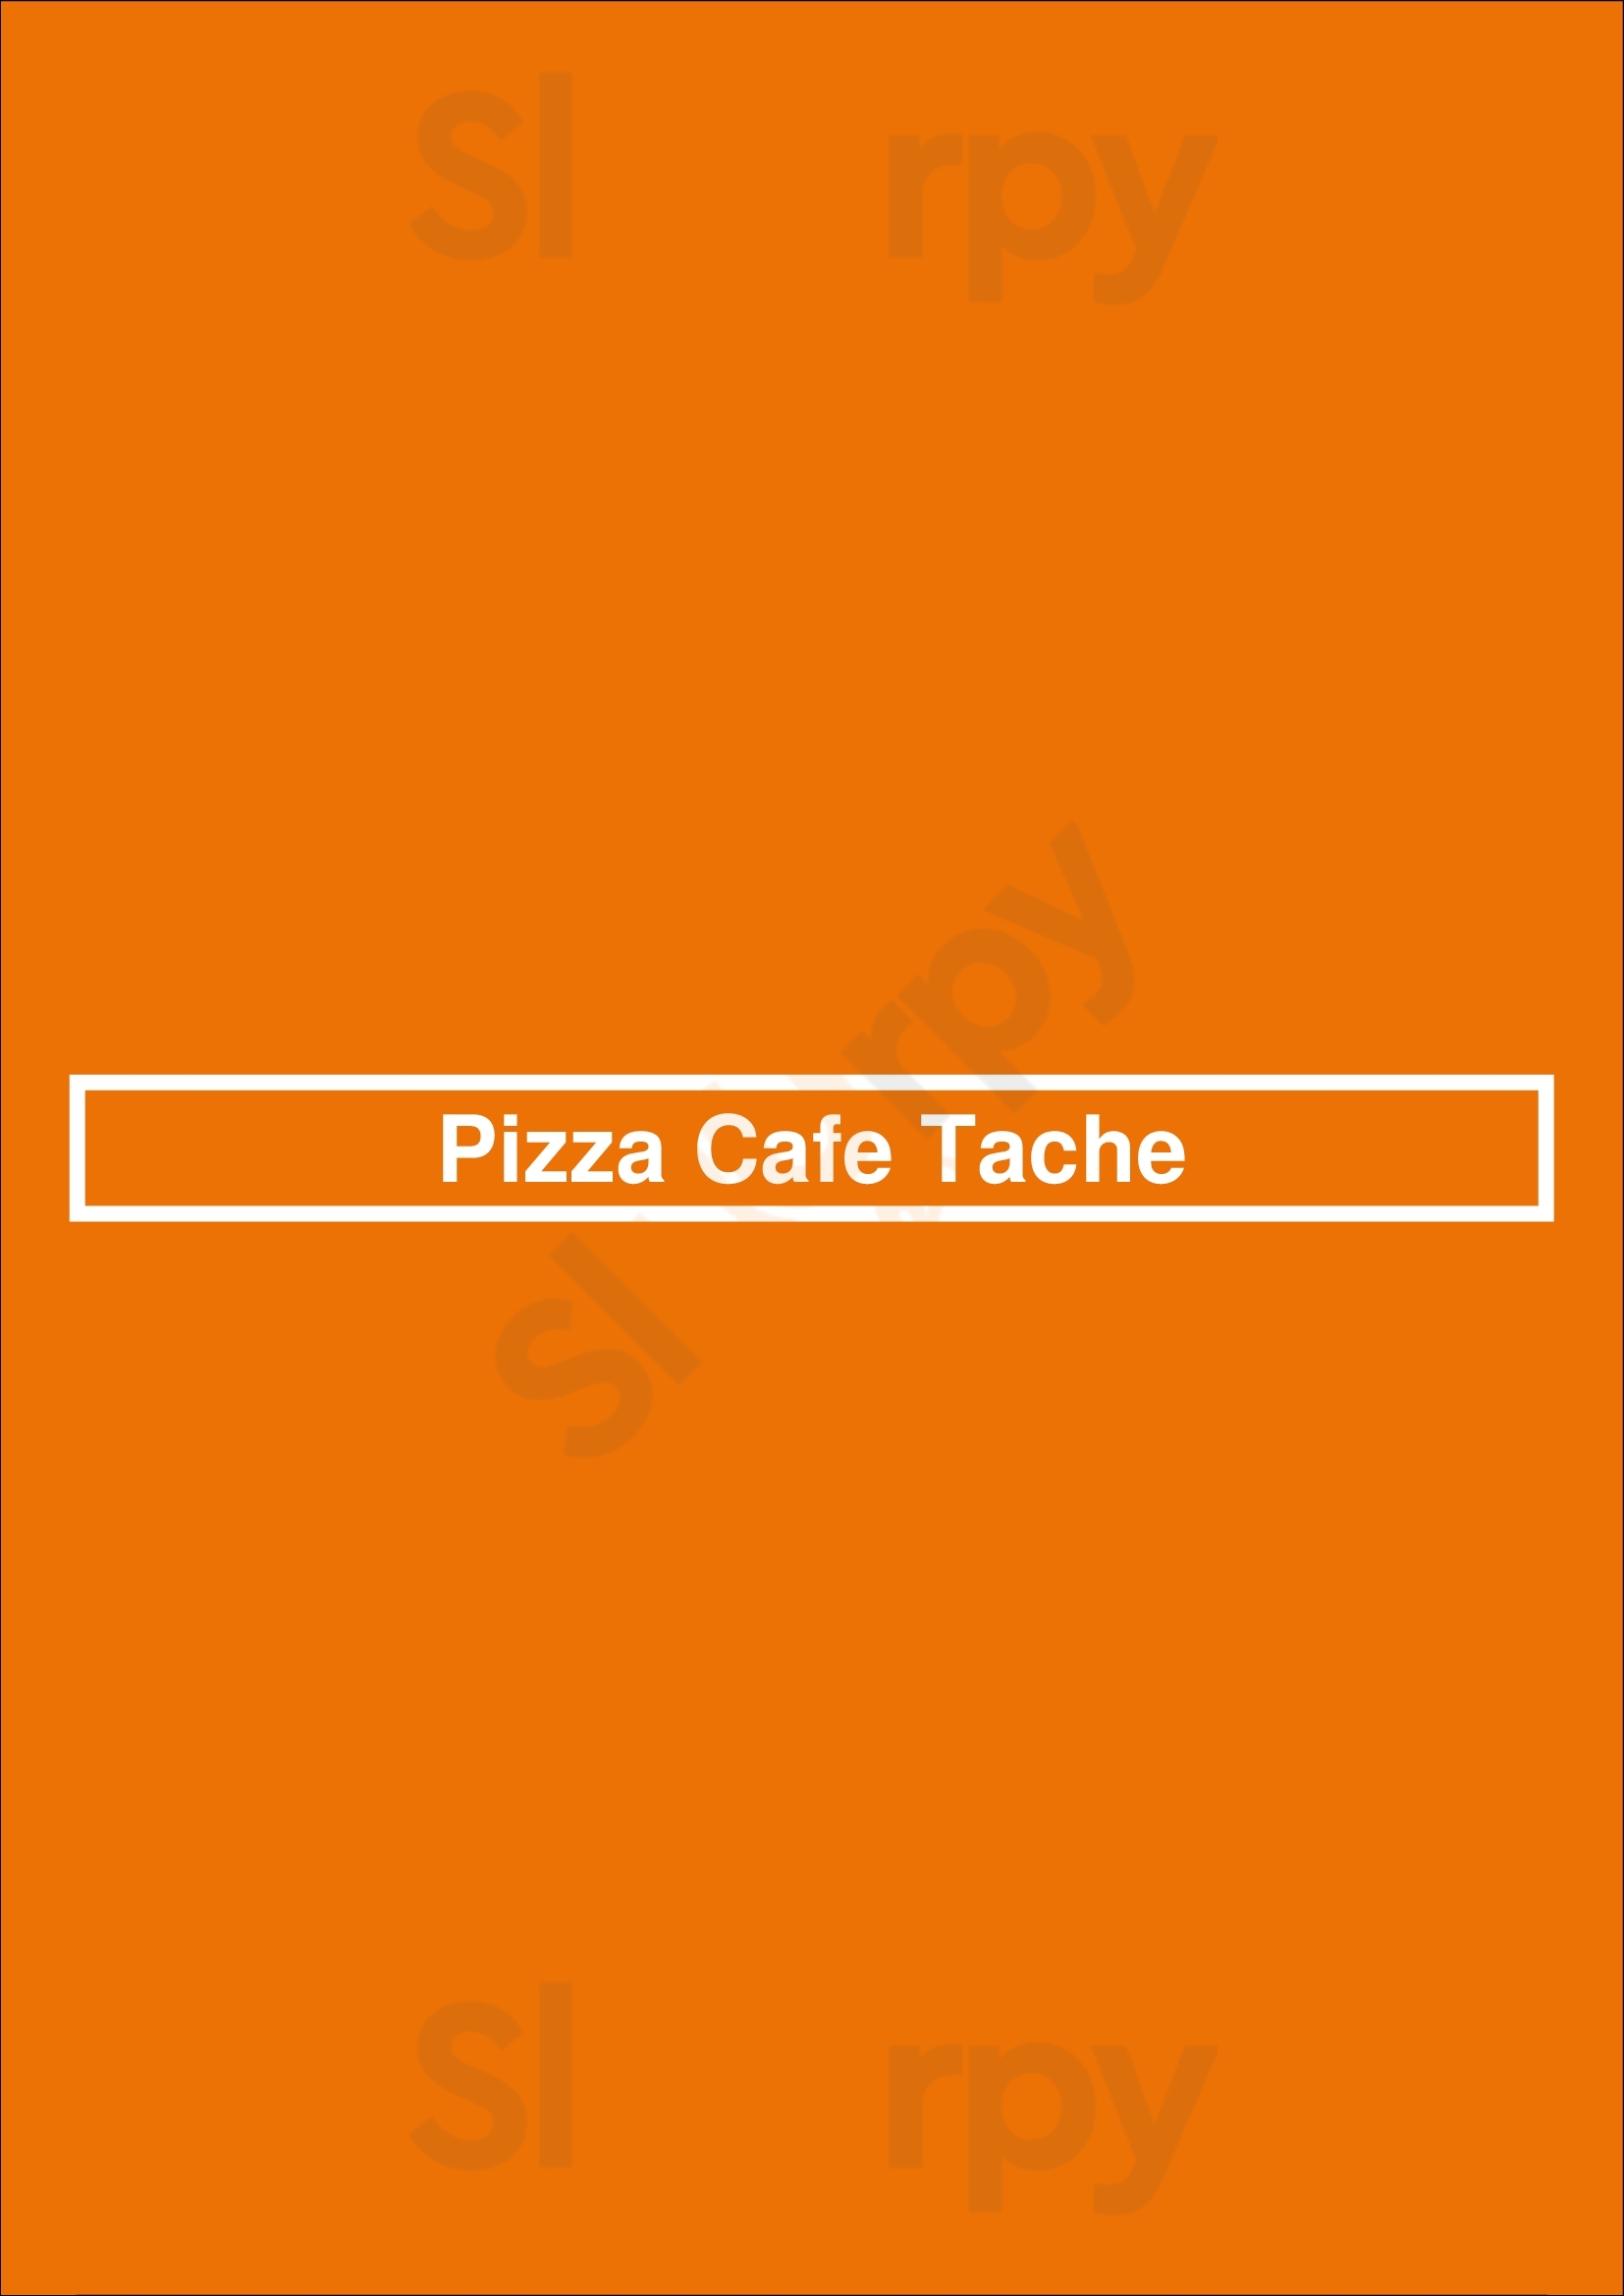 Pizza Cafe Tache Gatineau Menu - 1